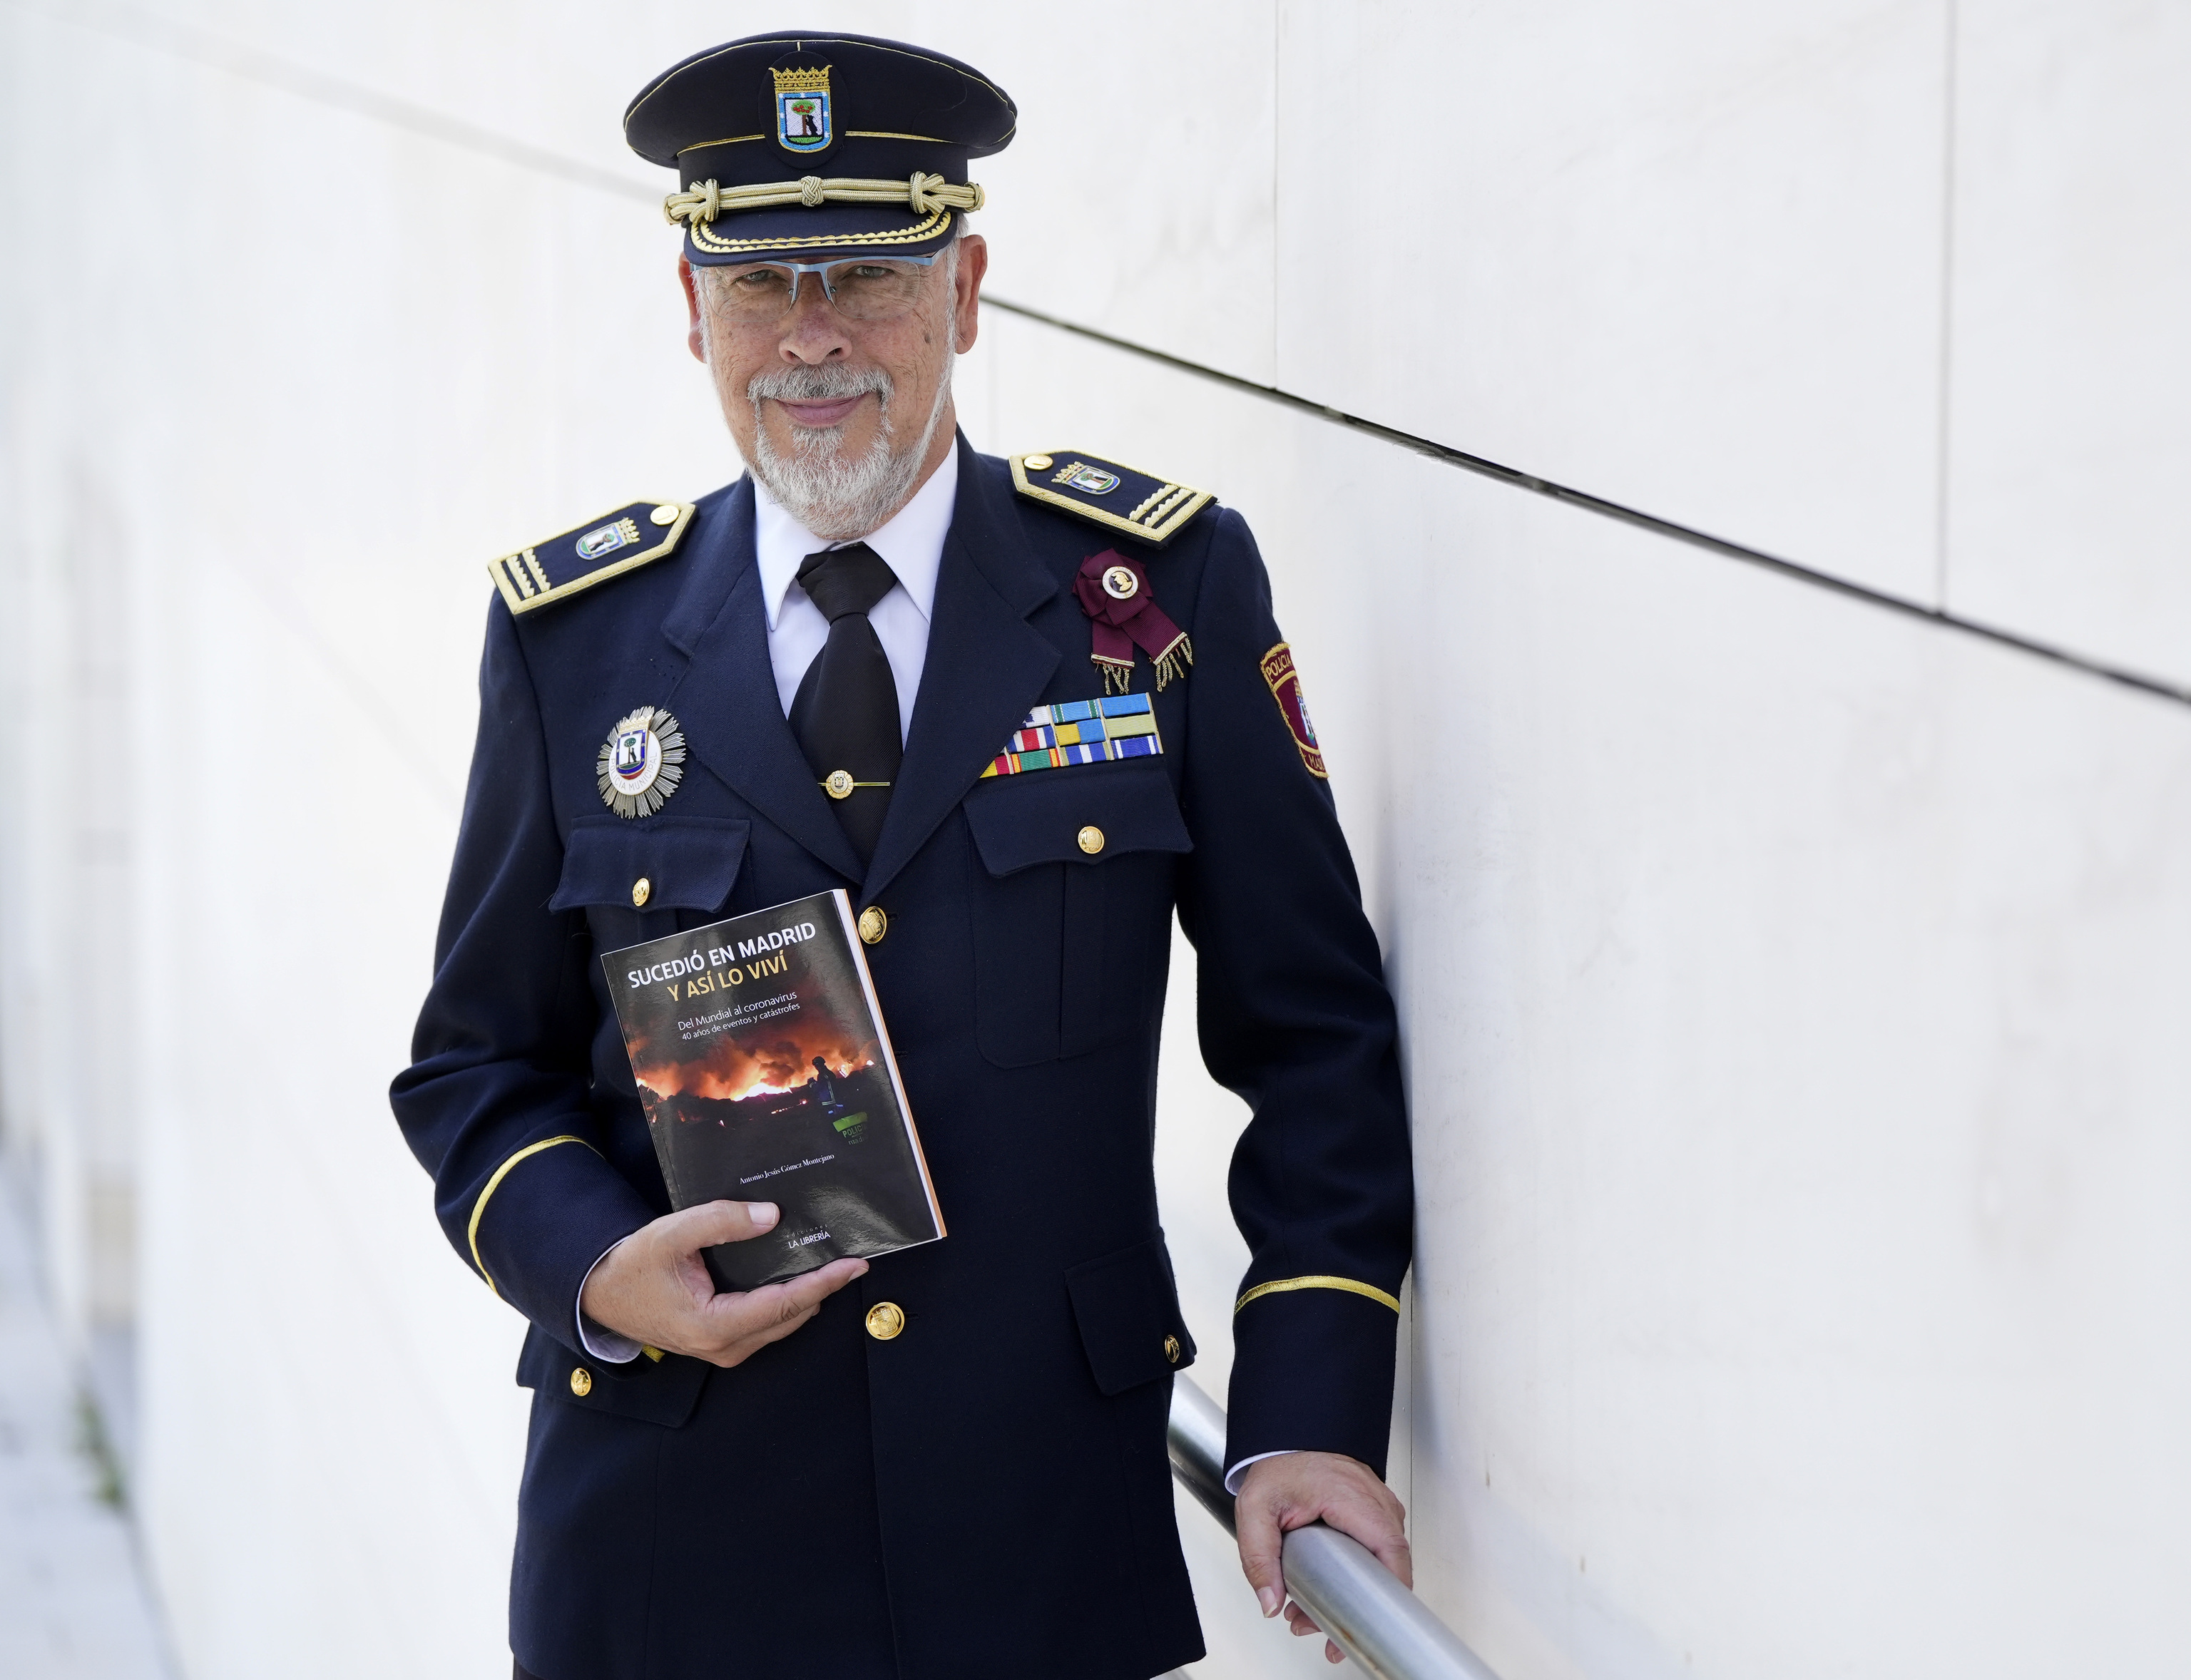 Mundiales, atentados, cumbres y avalanchas: el comisario que recuerda en un libro los 40 sucesos más impactantes de Madrid